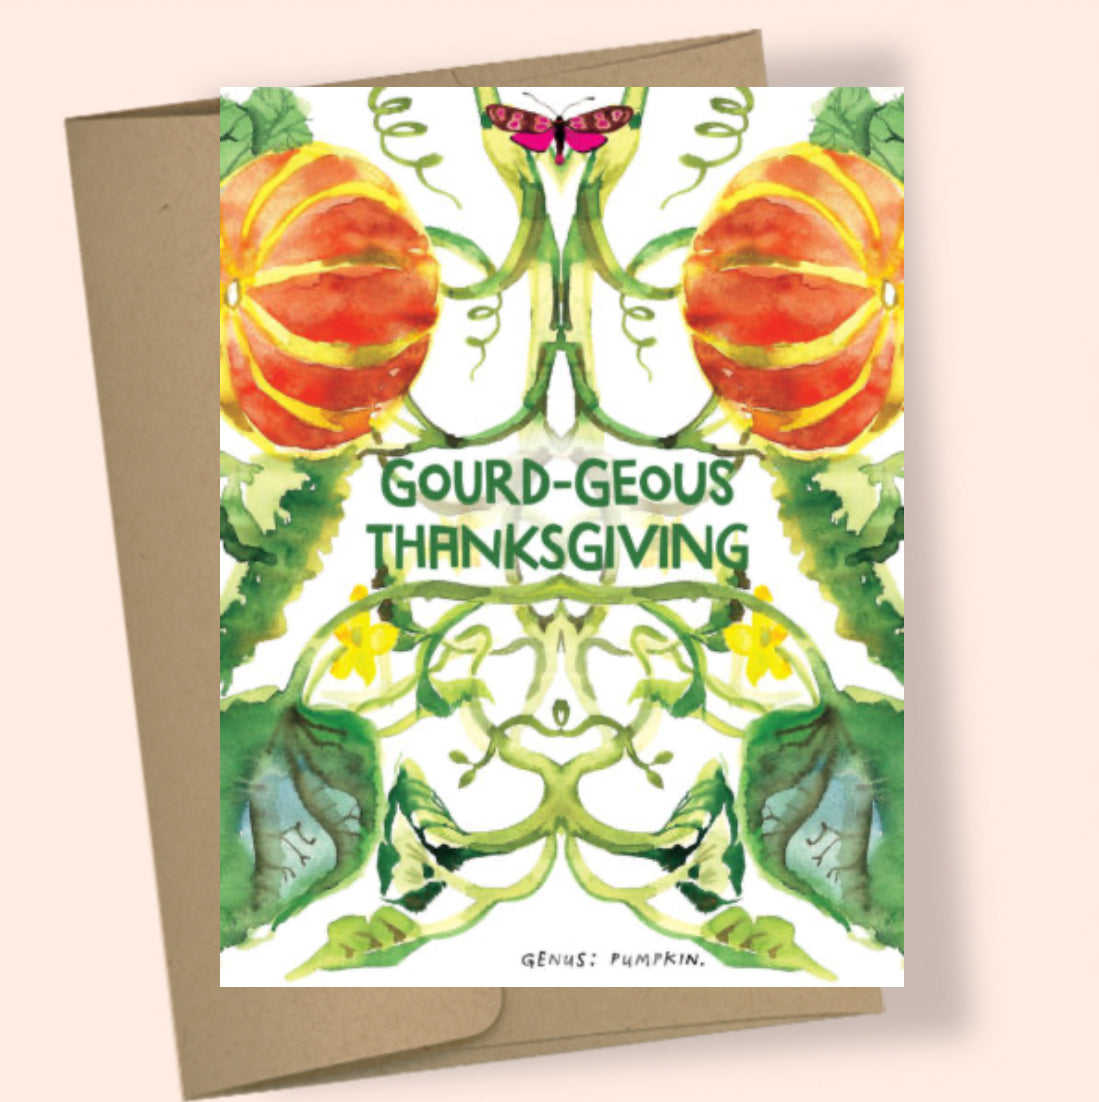 Gourd-geous Thanksgiving Card